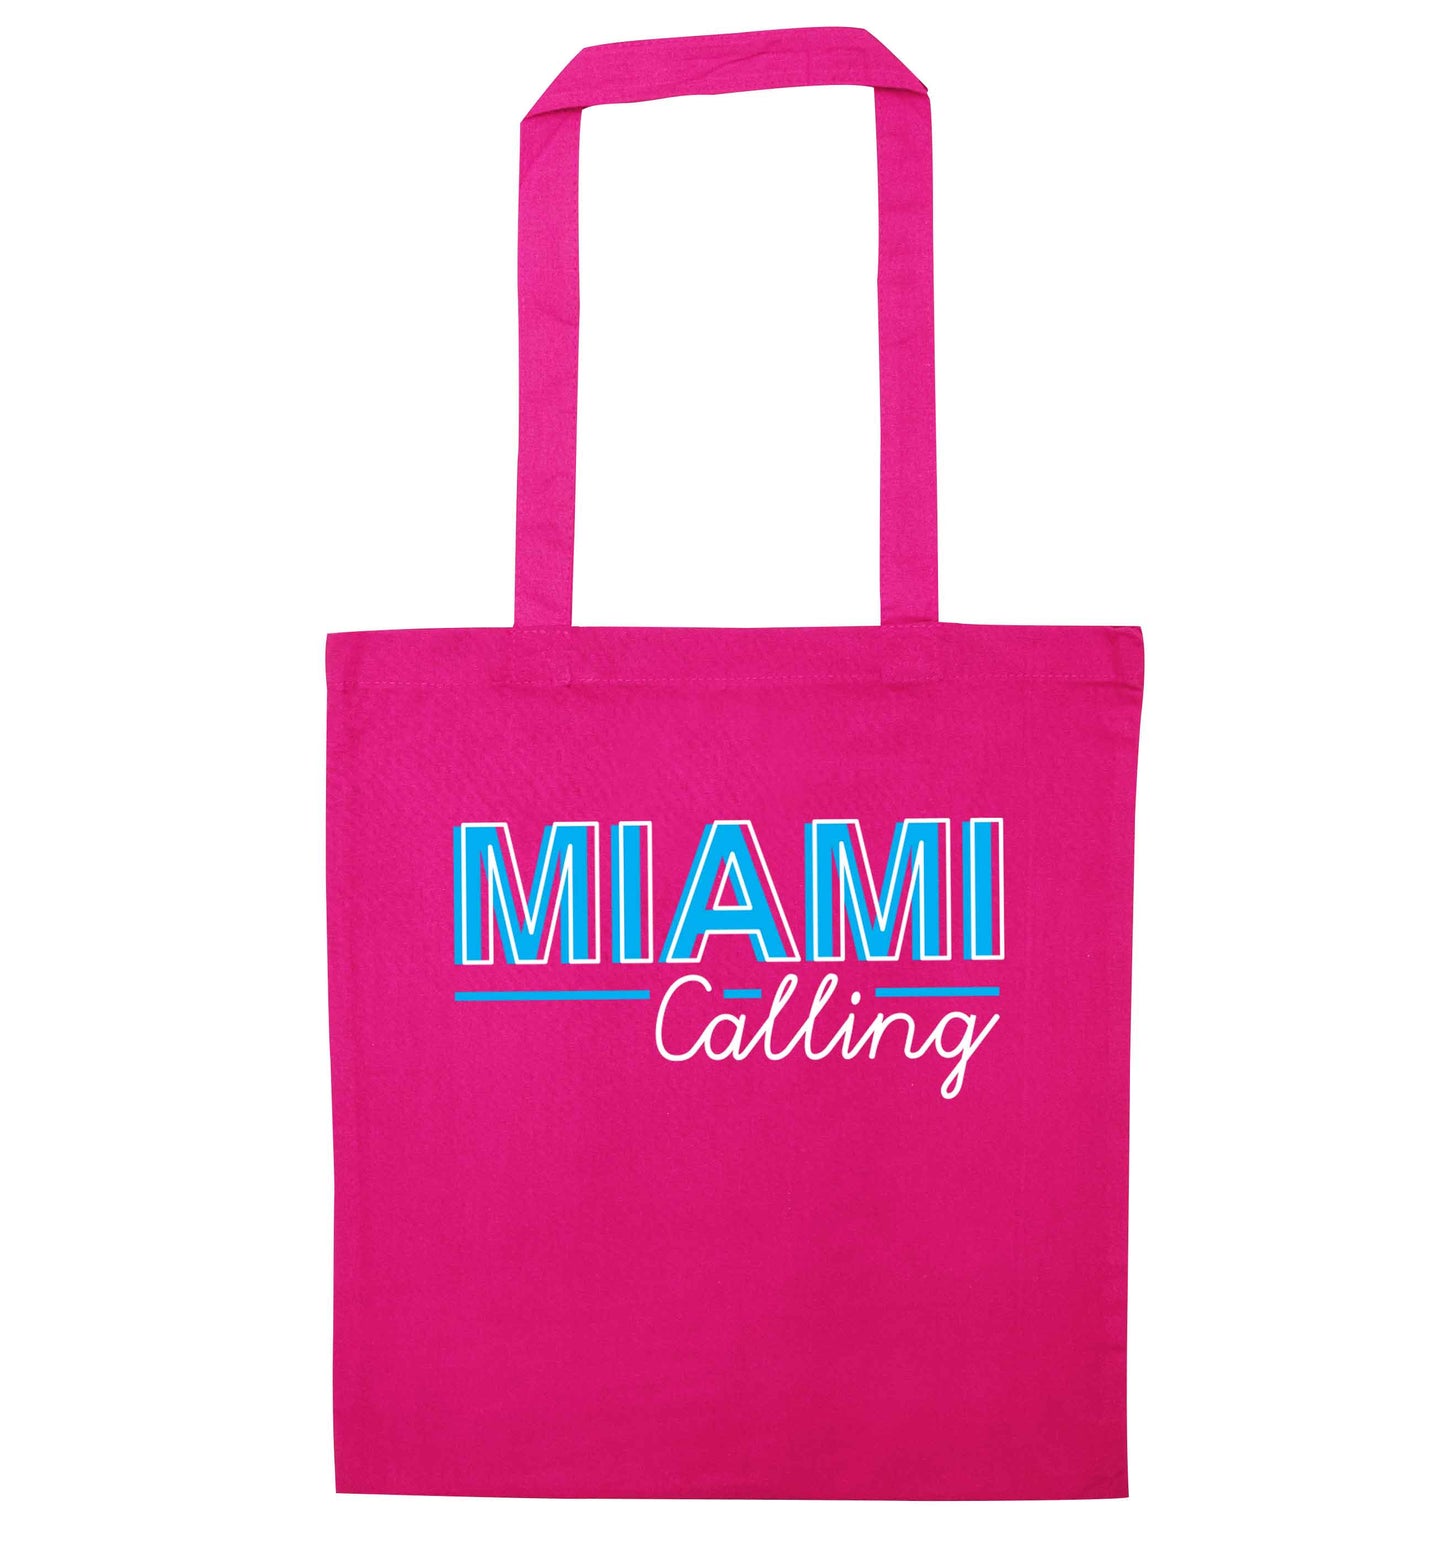 Miami calling pink tote bag